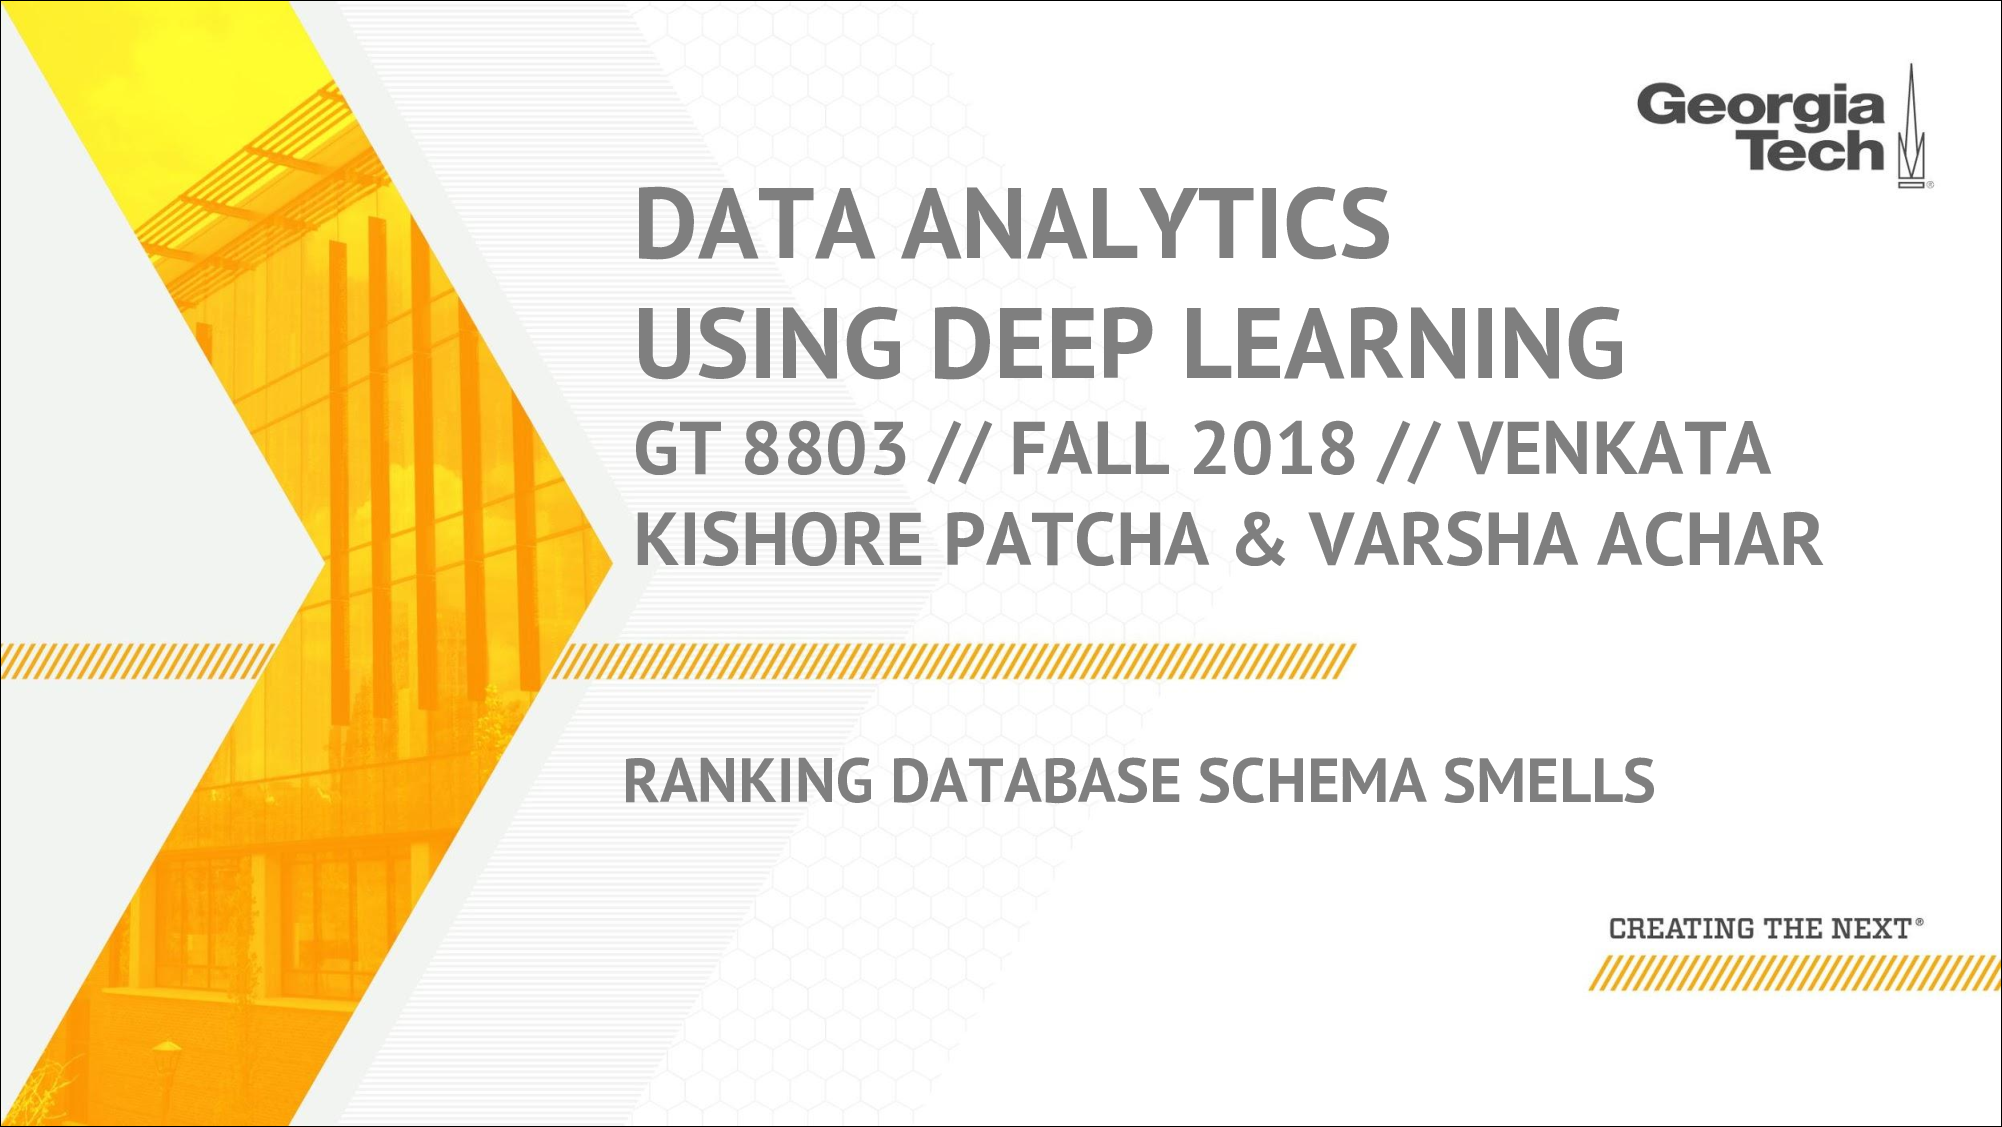 [PRESENTATION] Ranking Database Schema Smells